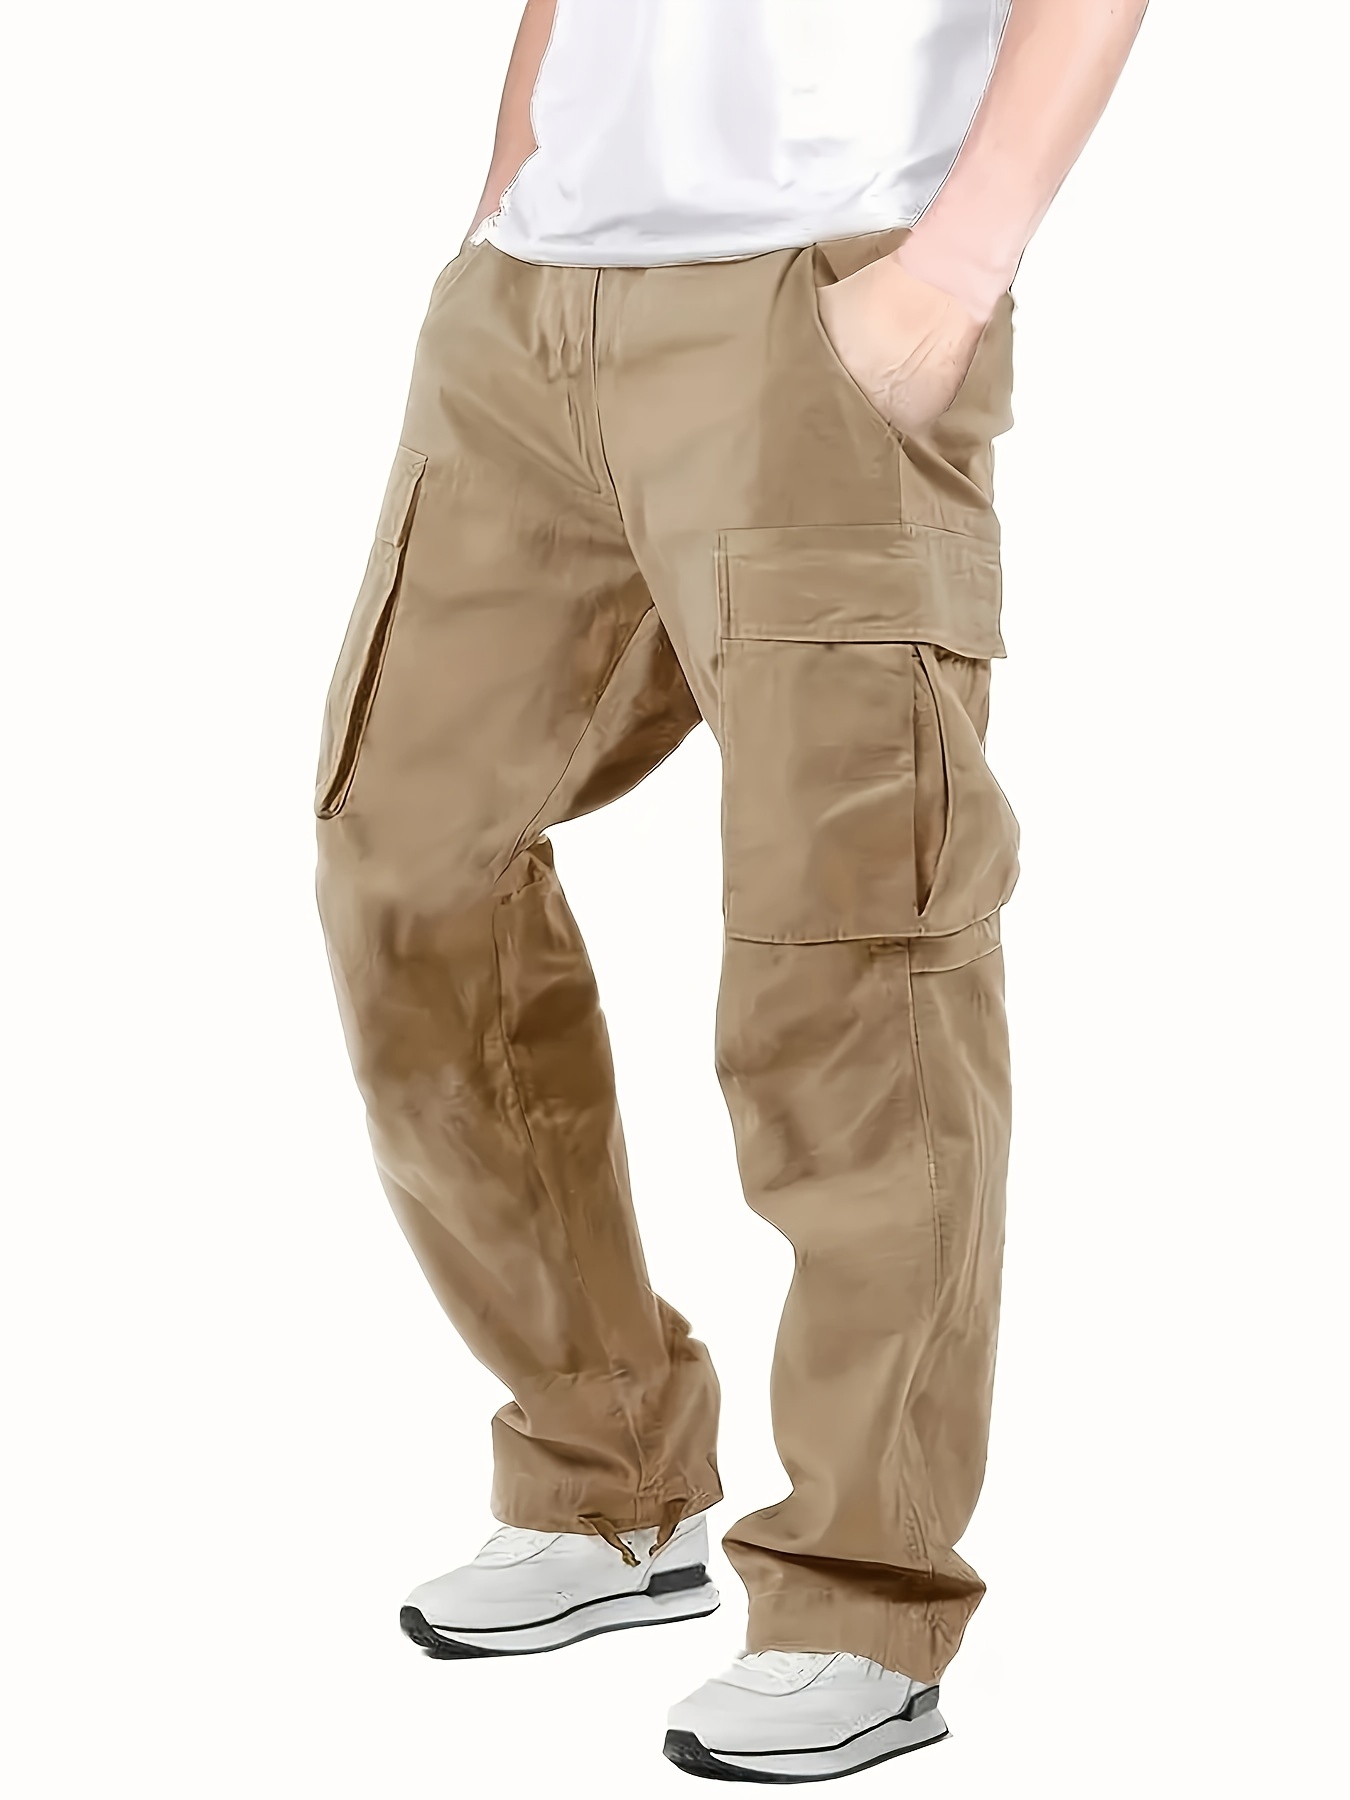  Pantalones de trabajo para hombre, color liso, ajuste